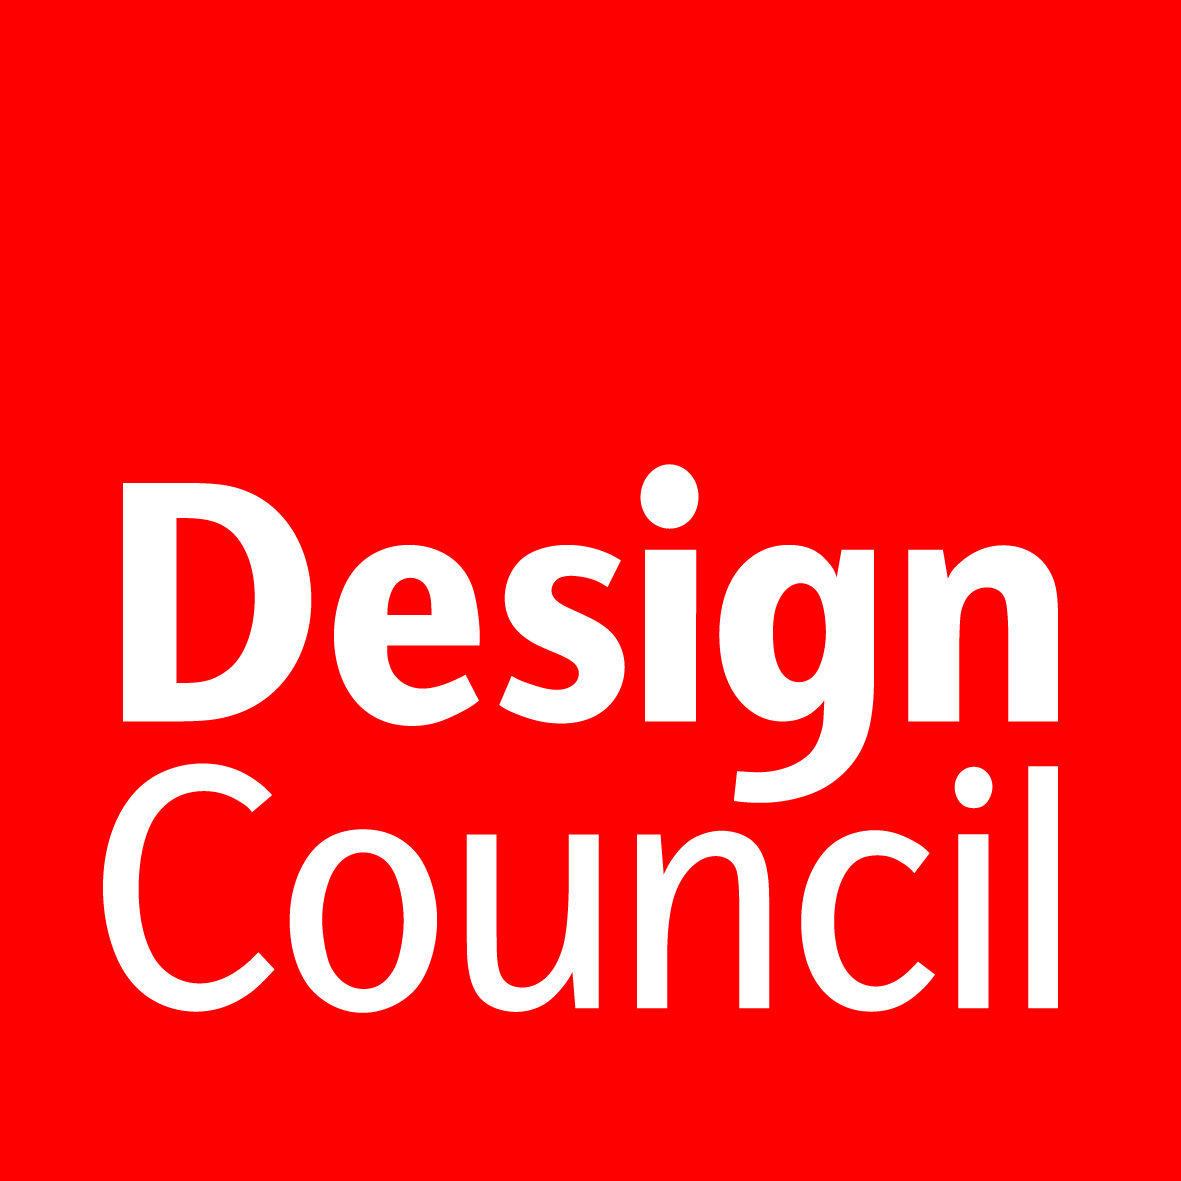 Design Council logo